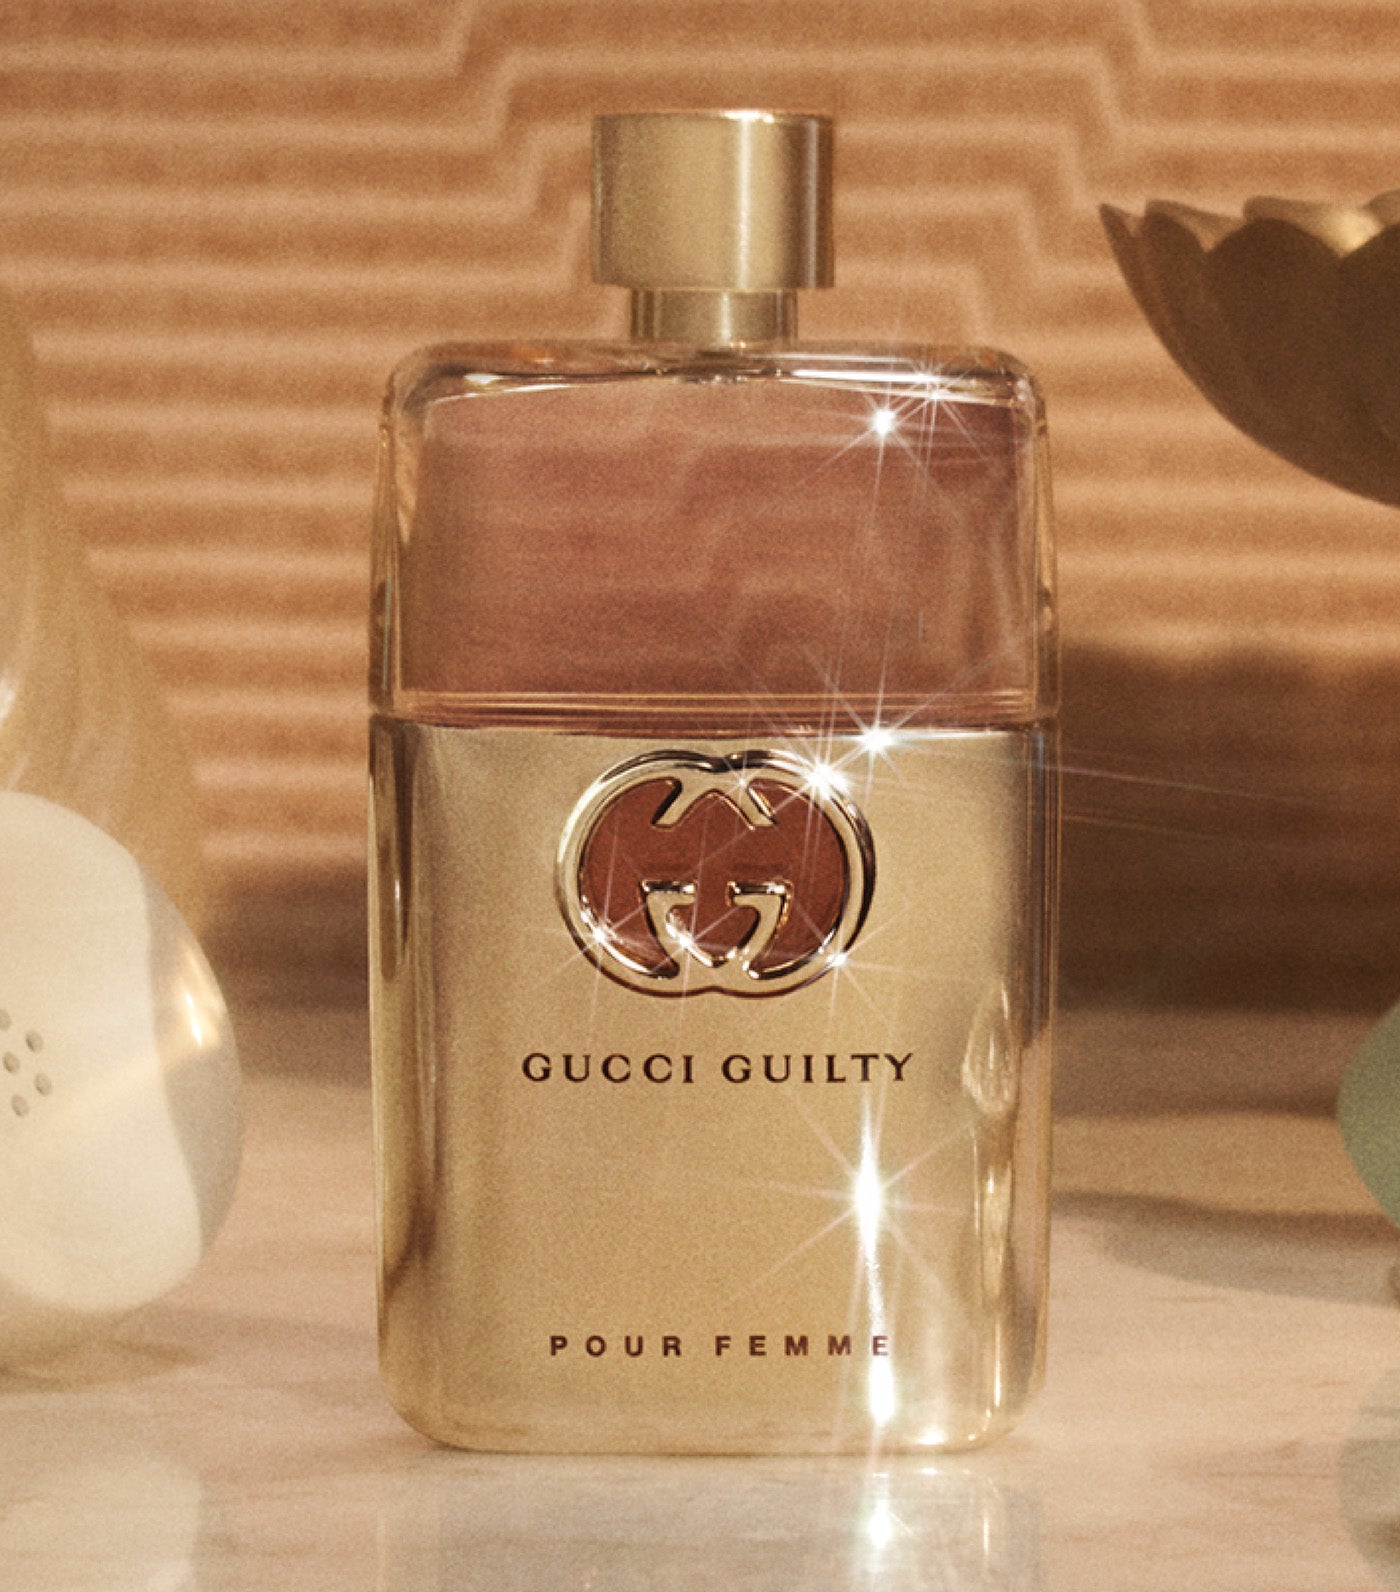 Gucci Guilty Pour Femme Eau de Parfum by Gucci Fragrances